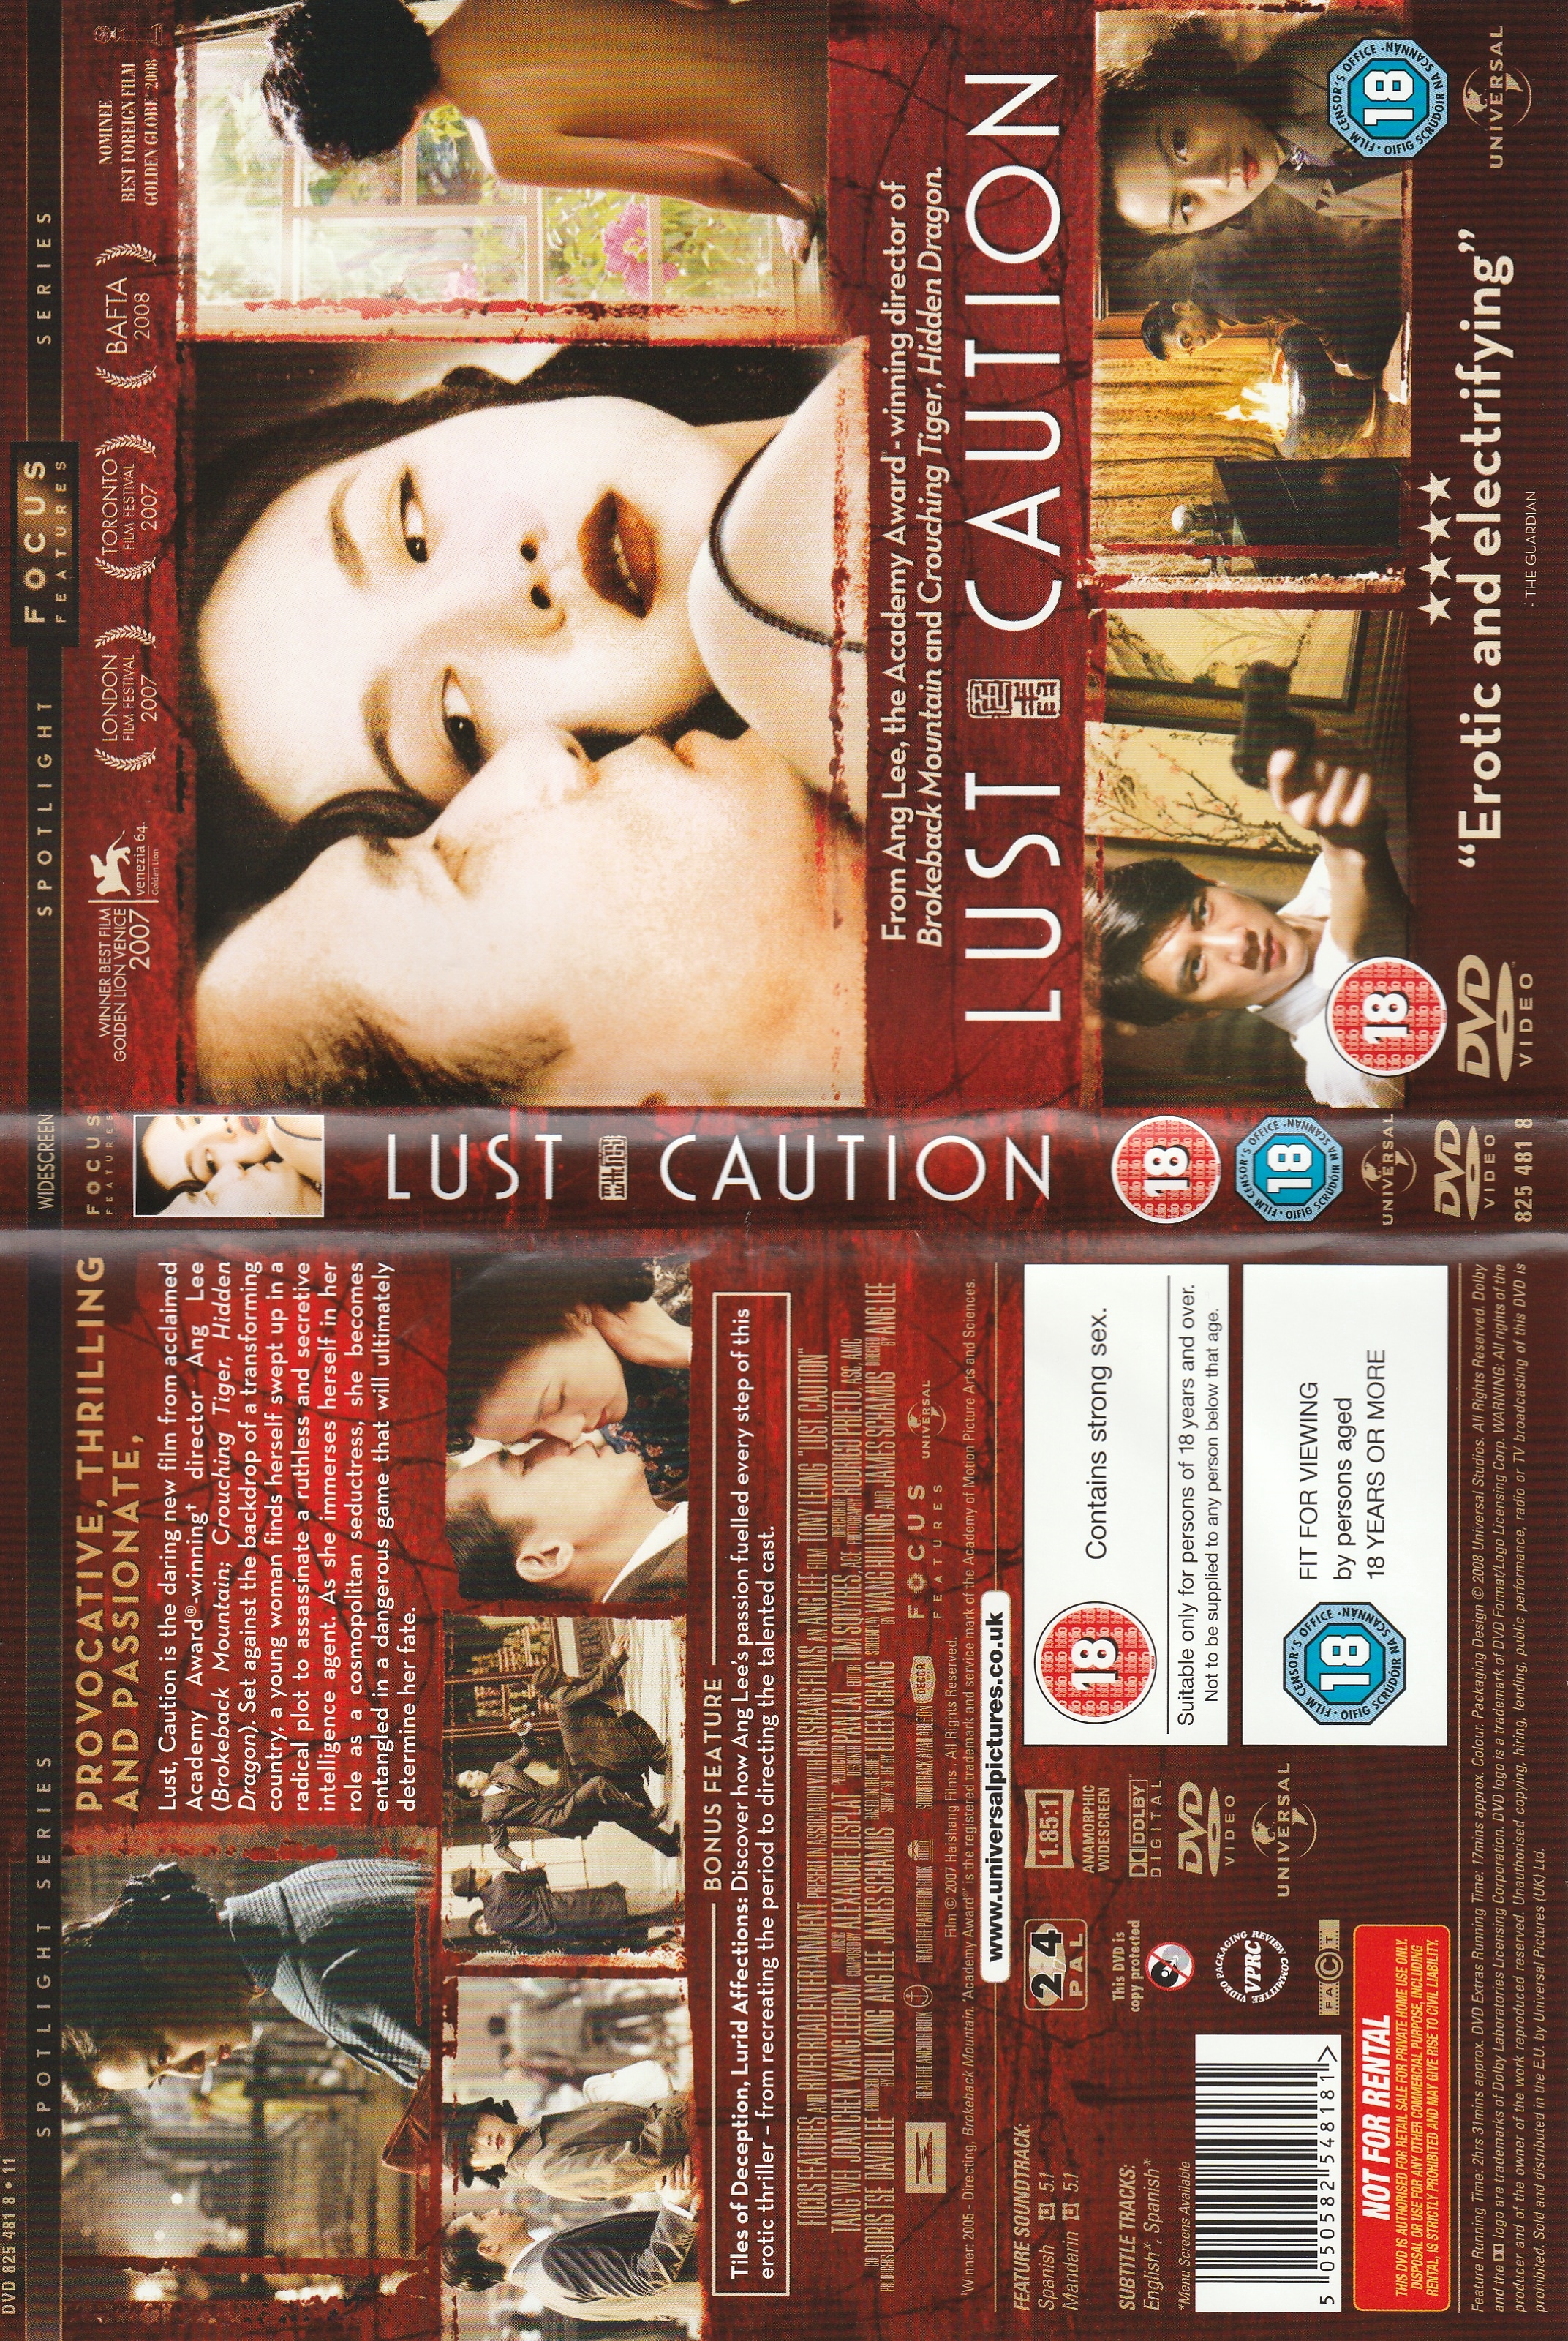 Jaquette DVD Lust caution v2